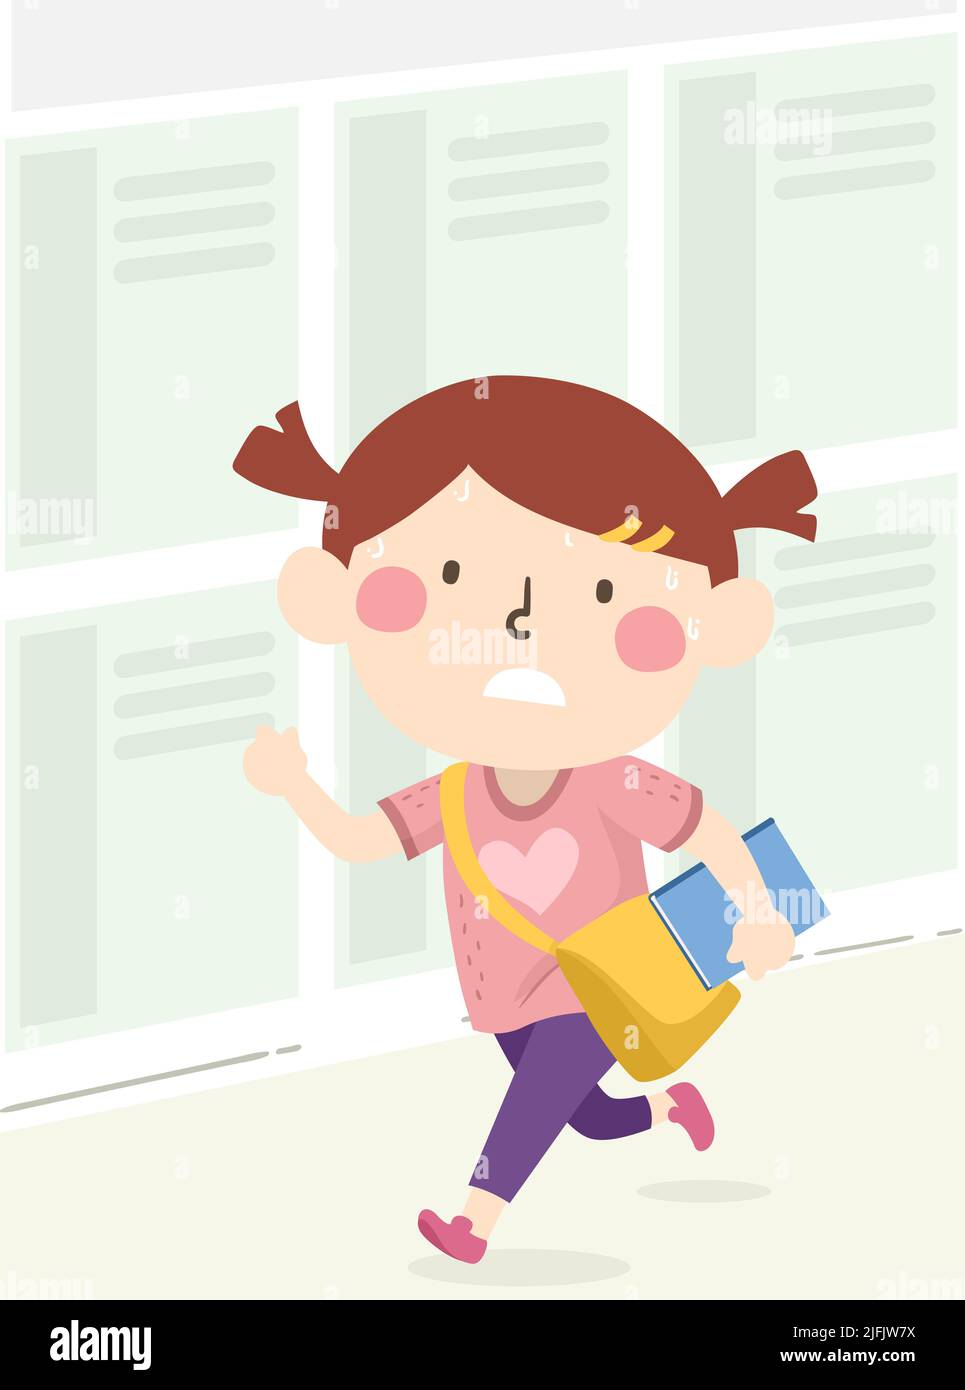 Ilustración de una estudiante niña con bolsa y libro, sudoración y carrera hasta tarde para la escuela Foto de stock